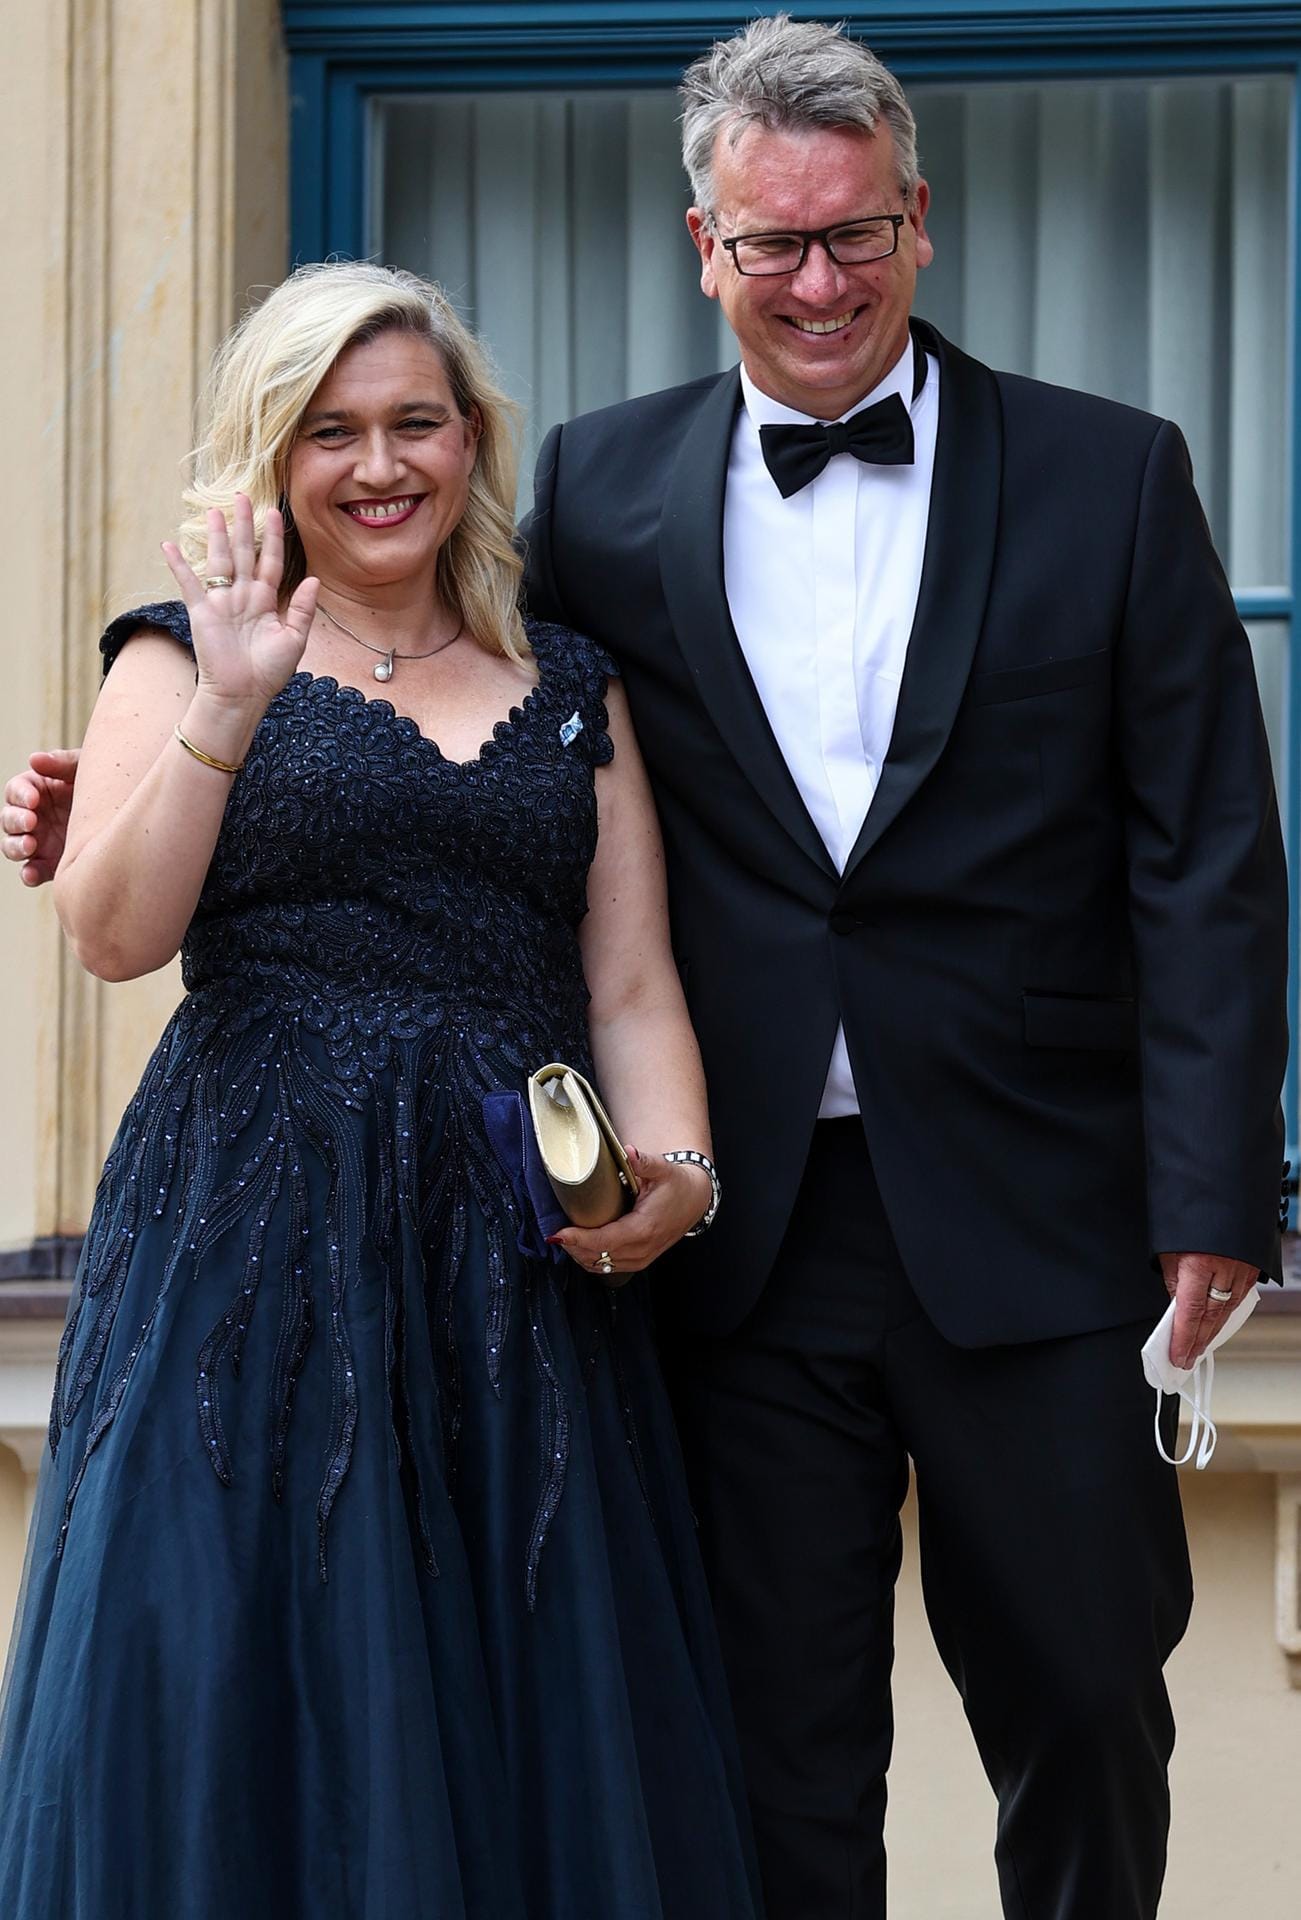 Melanie Huml, bayerische Staatsministerin für Europaangelegenheiten und Internationales, und ihr Mann Markus